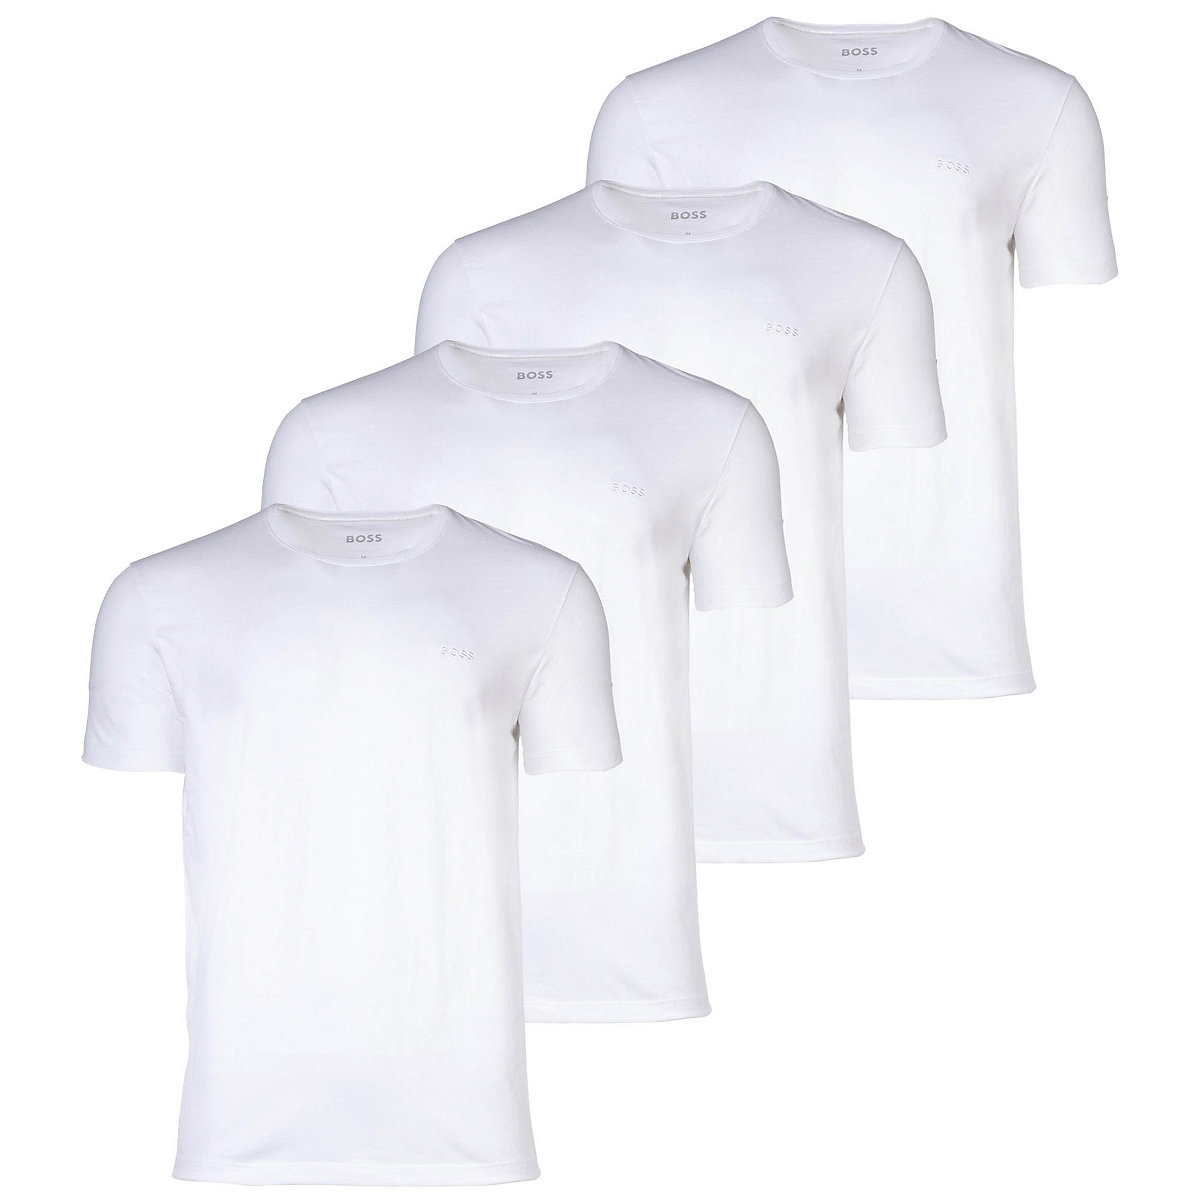 BOSS Herren T-Shirt 4er Pack TShirtRN Comfort Unterhemd Rundhals Cotton T-Shirts weiß